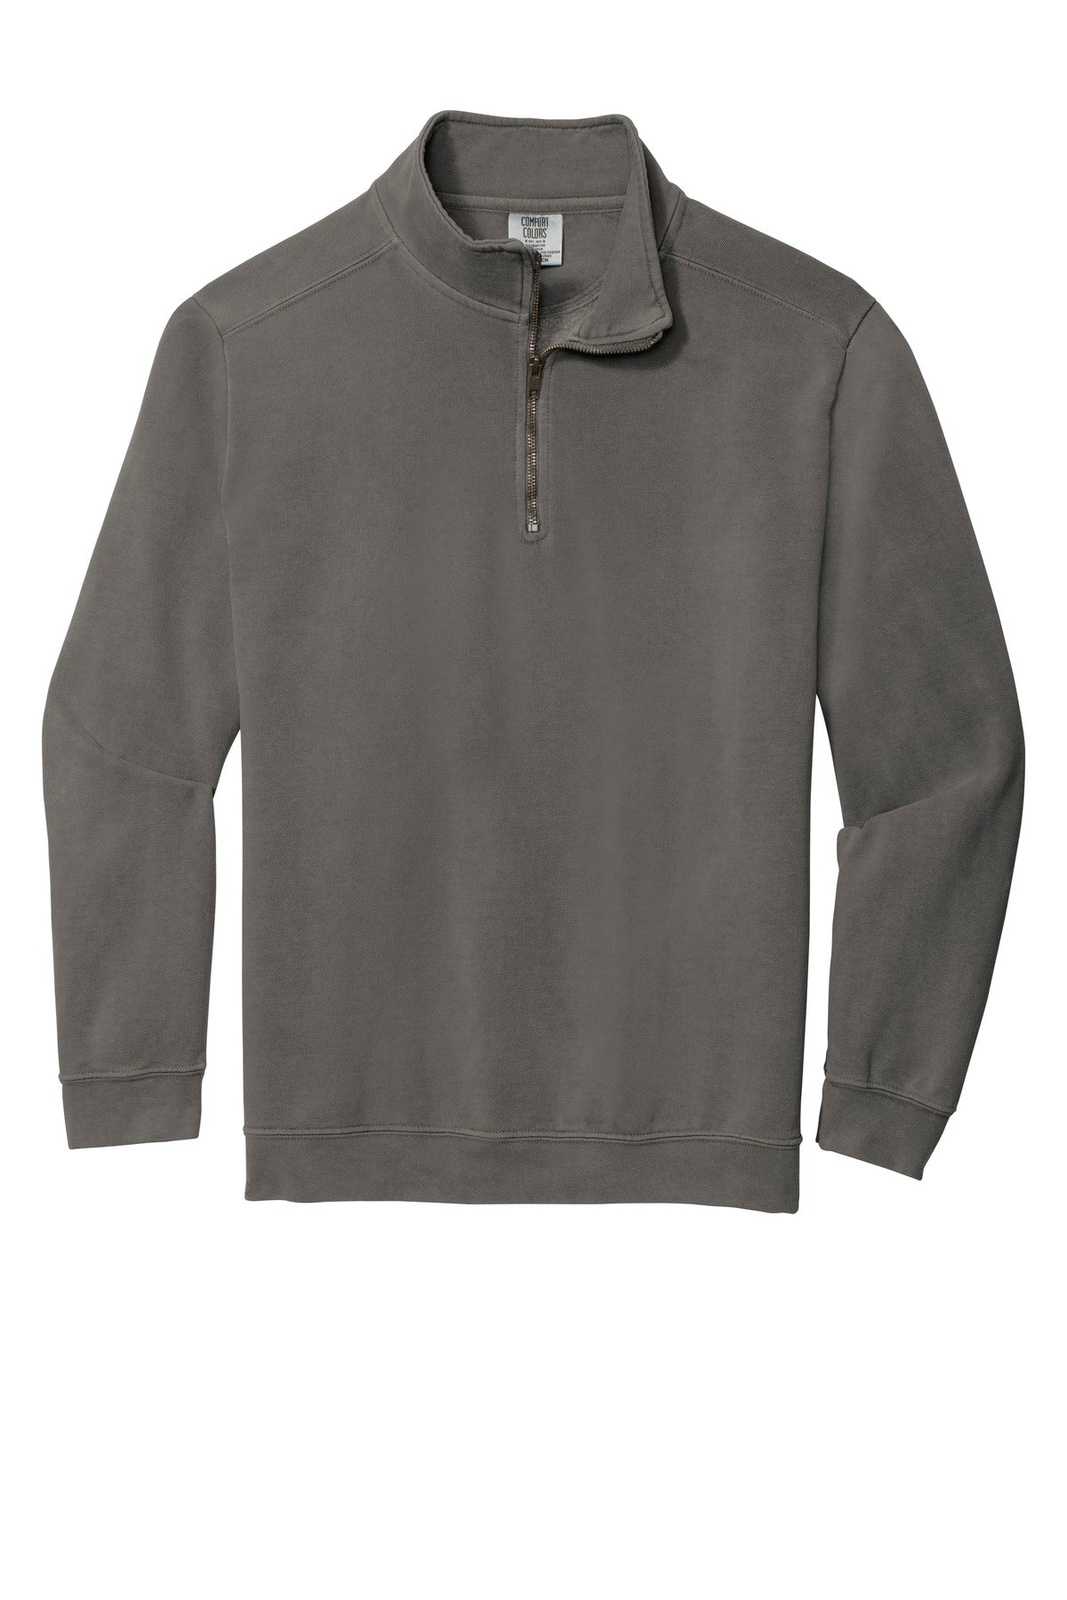 Comfort Colors 1580 Ring Spun 1/4-Zip Sweatshirt - Gray - HIT a Double